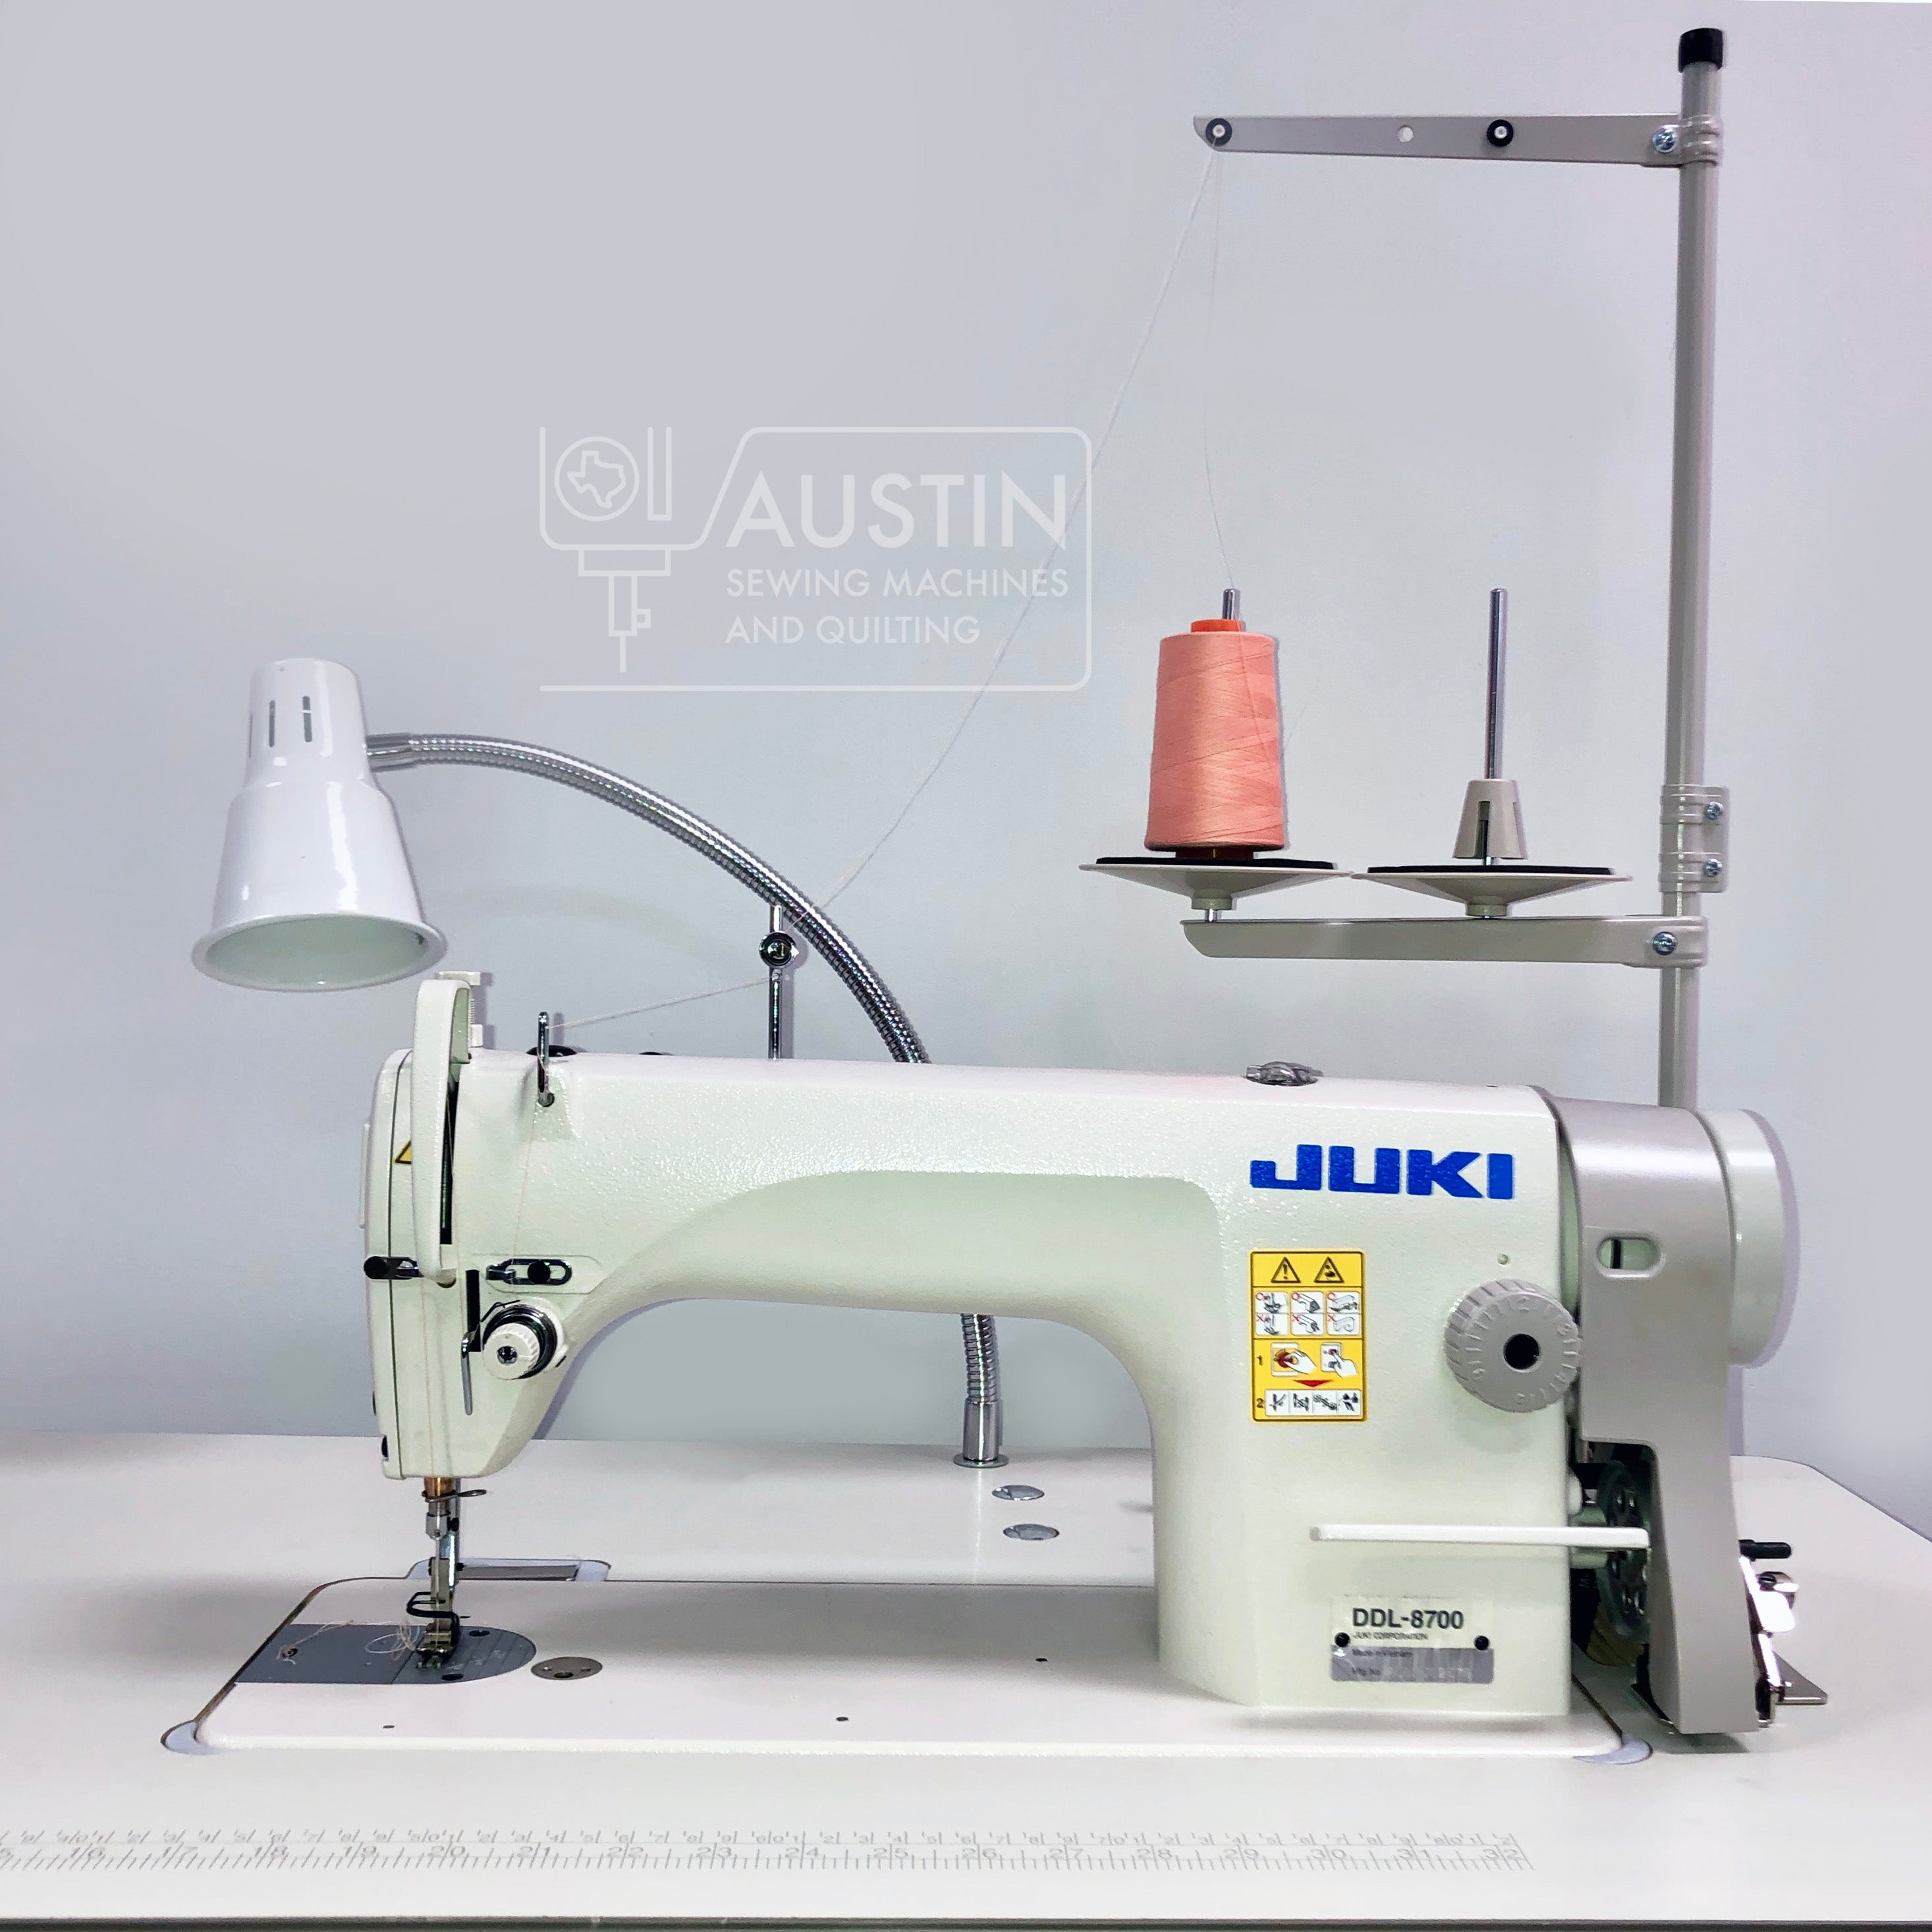 JUKI DDL-8700 Single Needle Lockstitch Sewing Machine